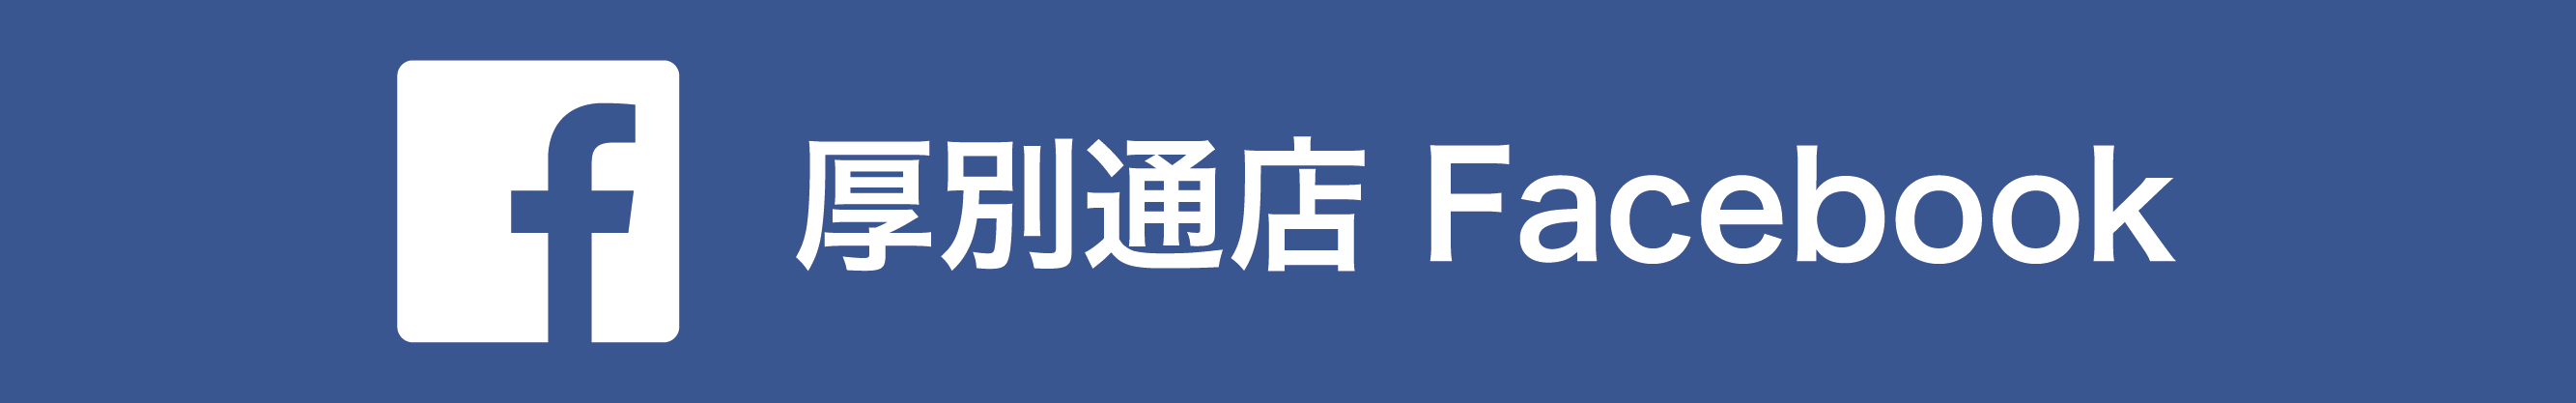 厚別通店 Facebook